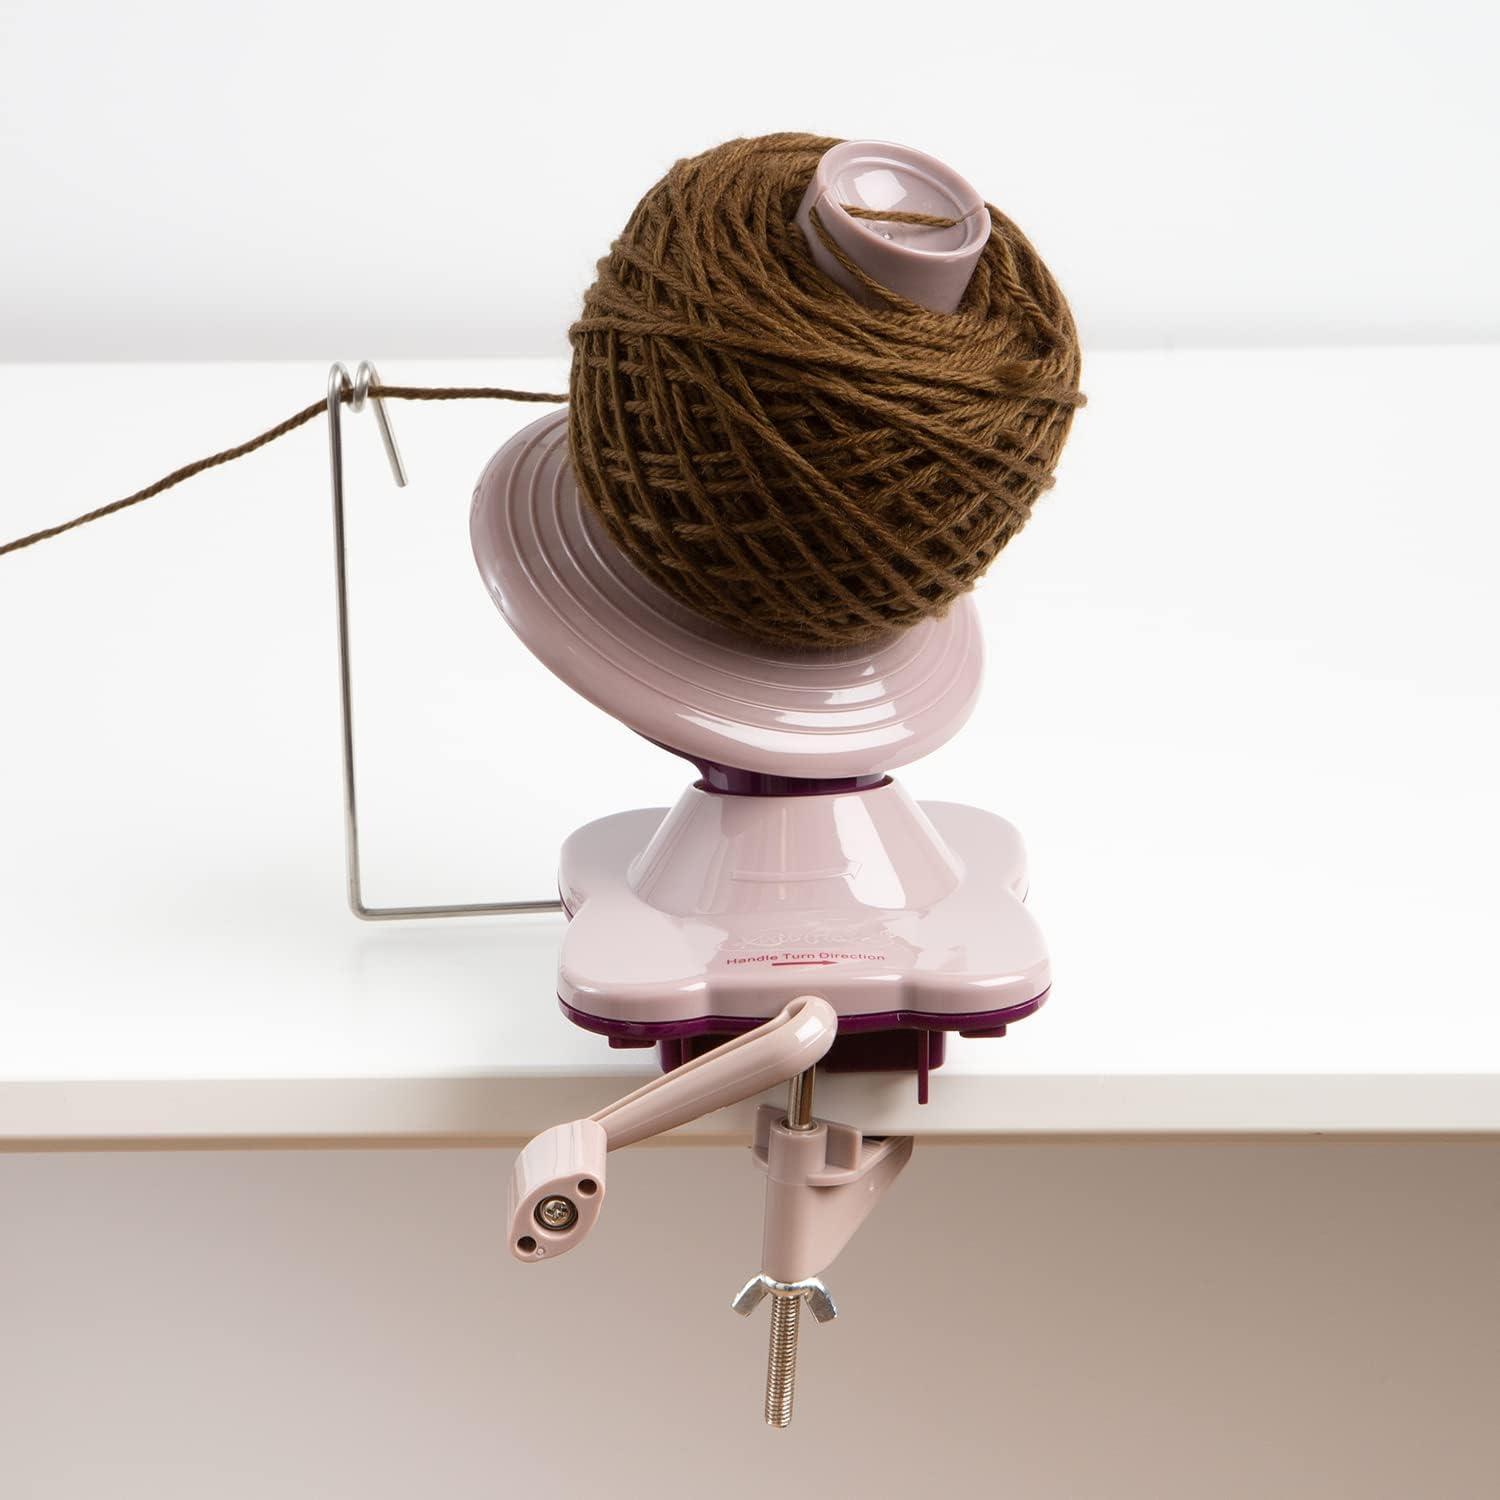 New Electric Yarn Winder / Yarn Tool / Wool Yarn, Acrylic Yarn